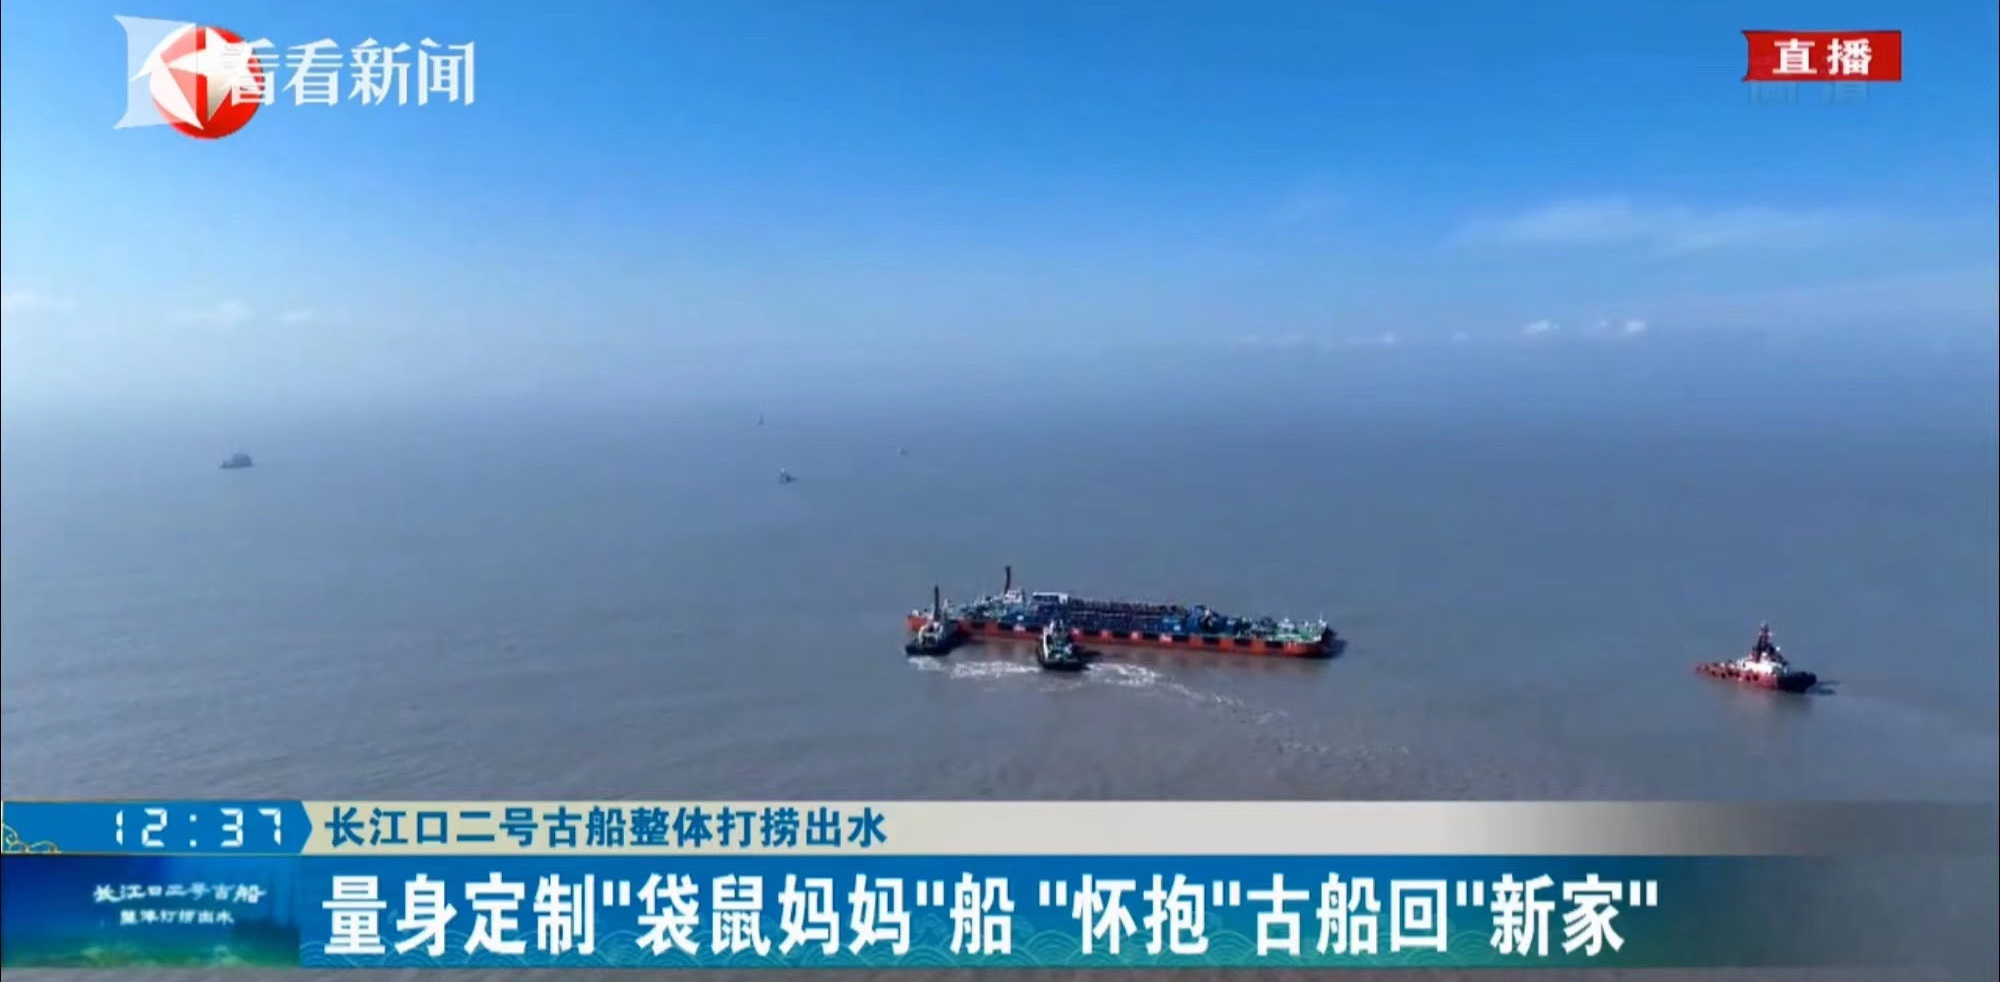 TVU 5G Çözümleri, Yangtze Nehrinin Dibinden Tarihi Batık Gemi Kazısının Canlı Yayınını Dünya Çapında İzleyicilere Ulaştırdı